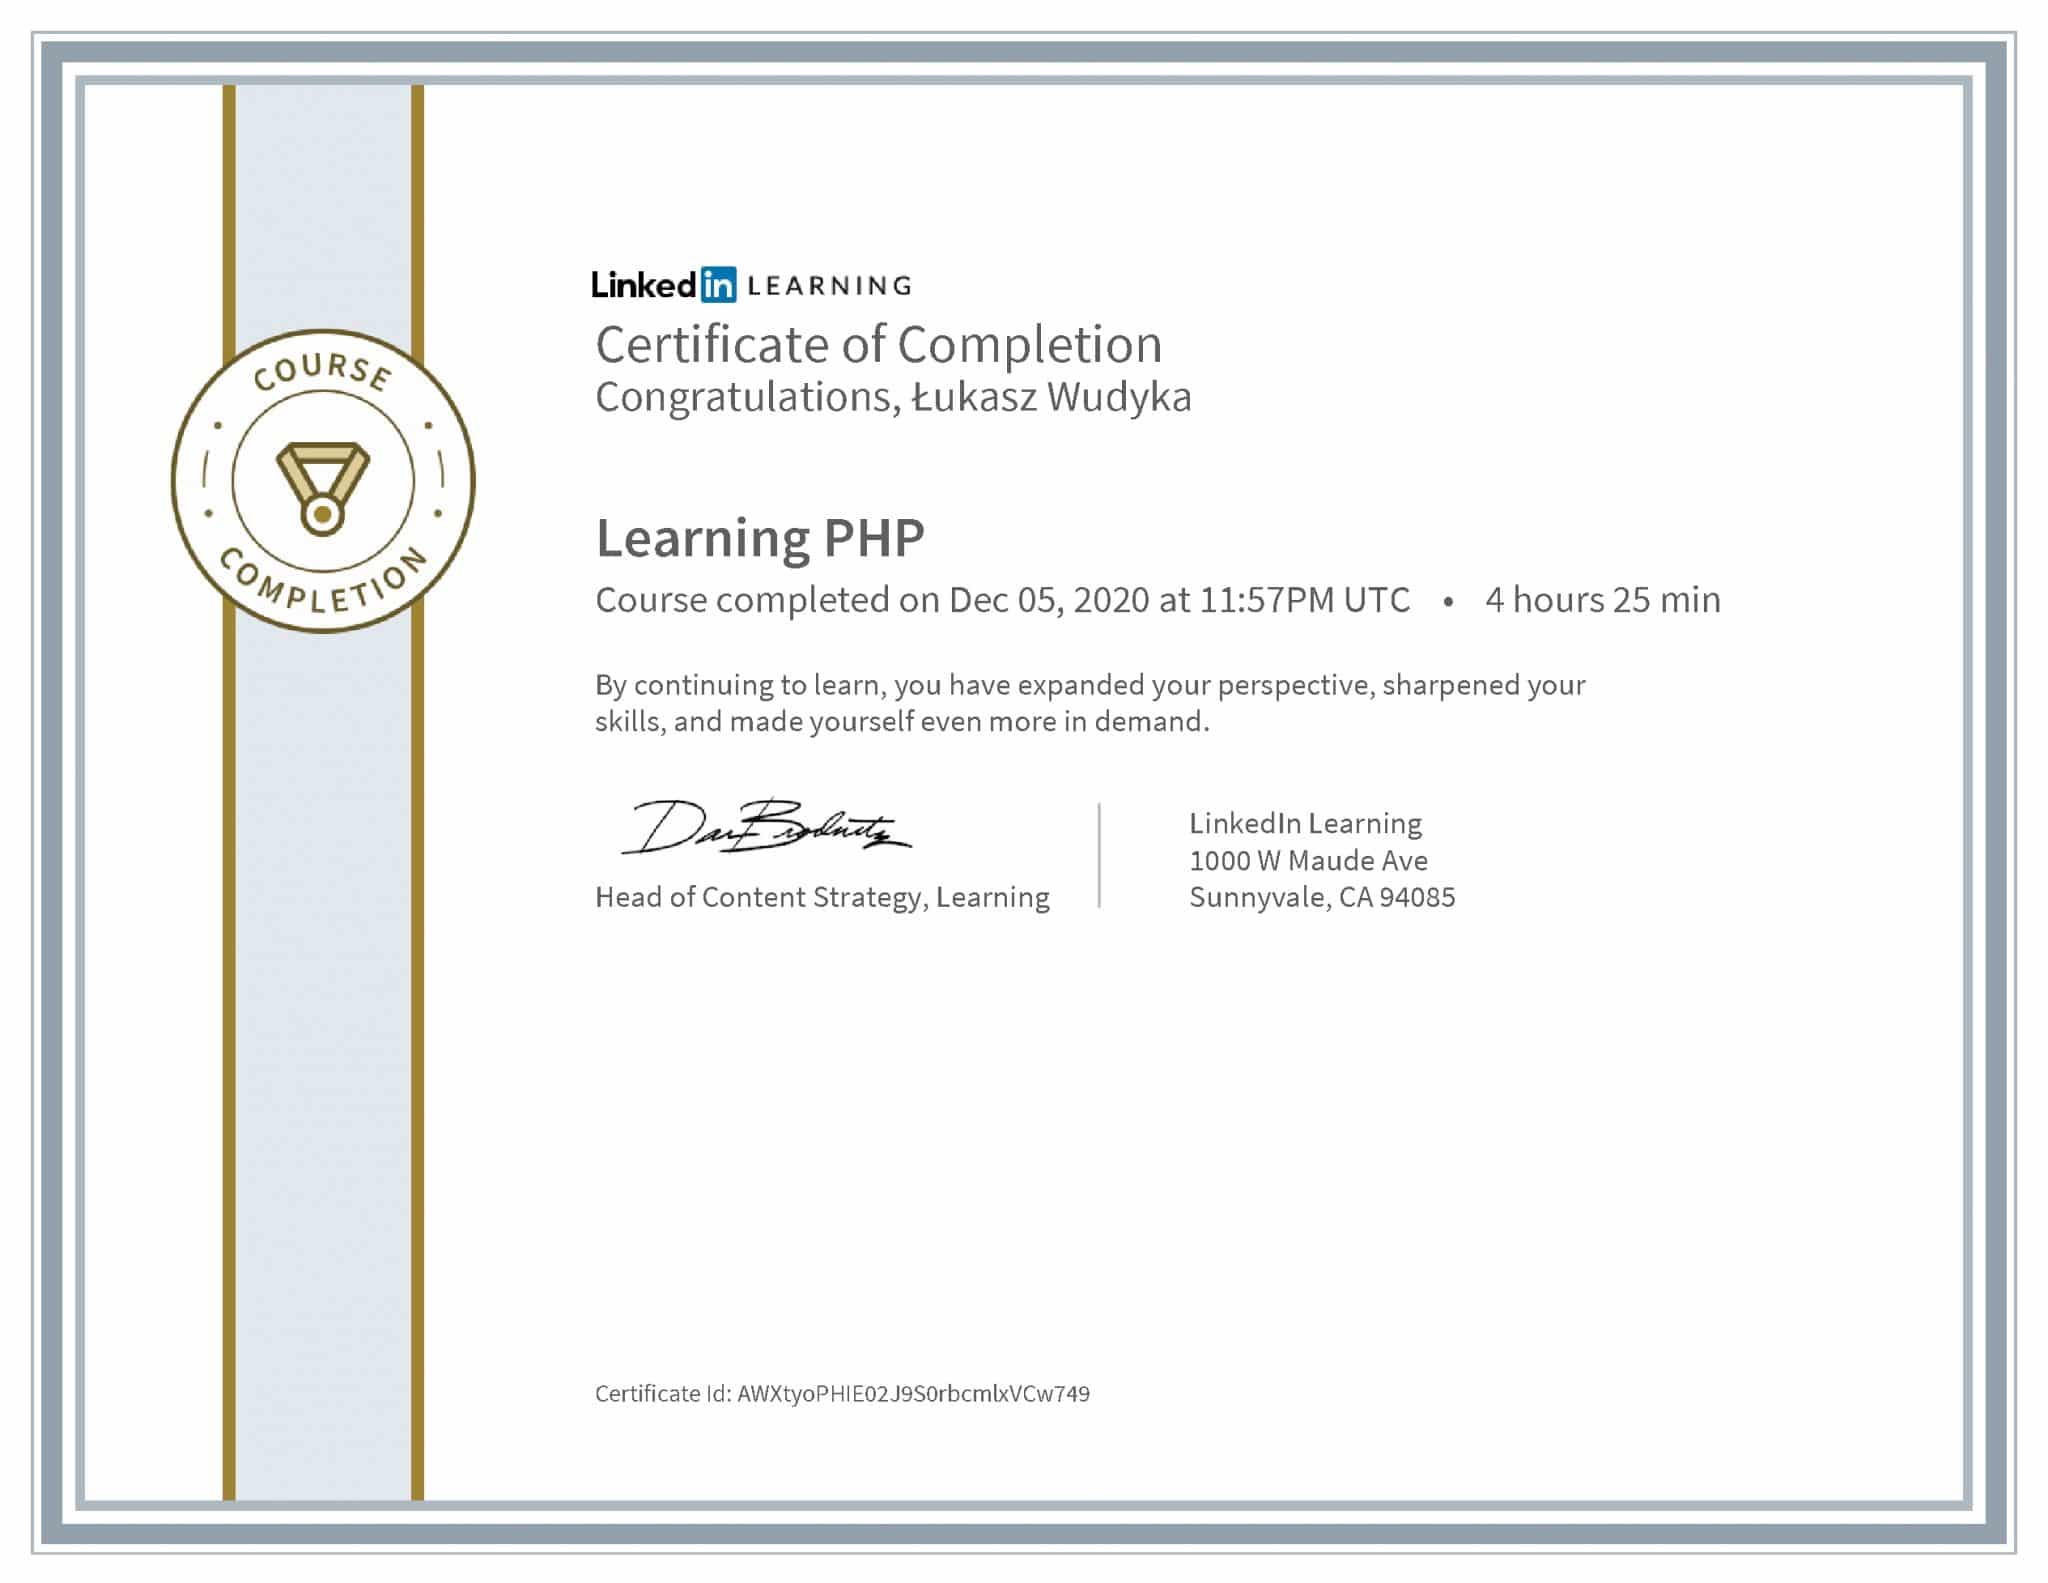 Łukasz Wudyka certyfikat LinkedIn Learning PHP